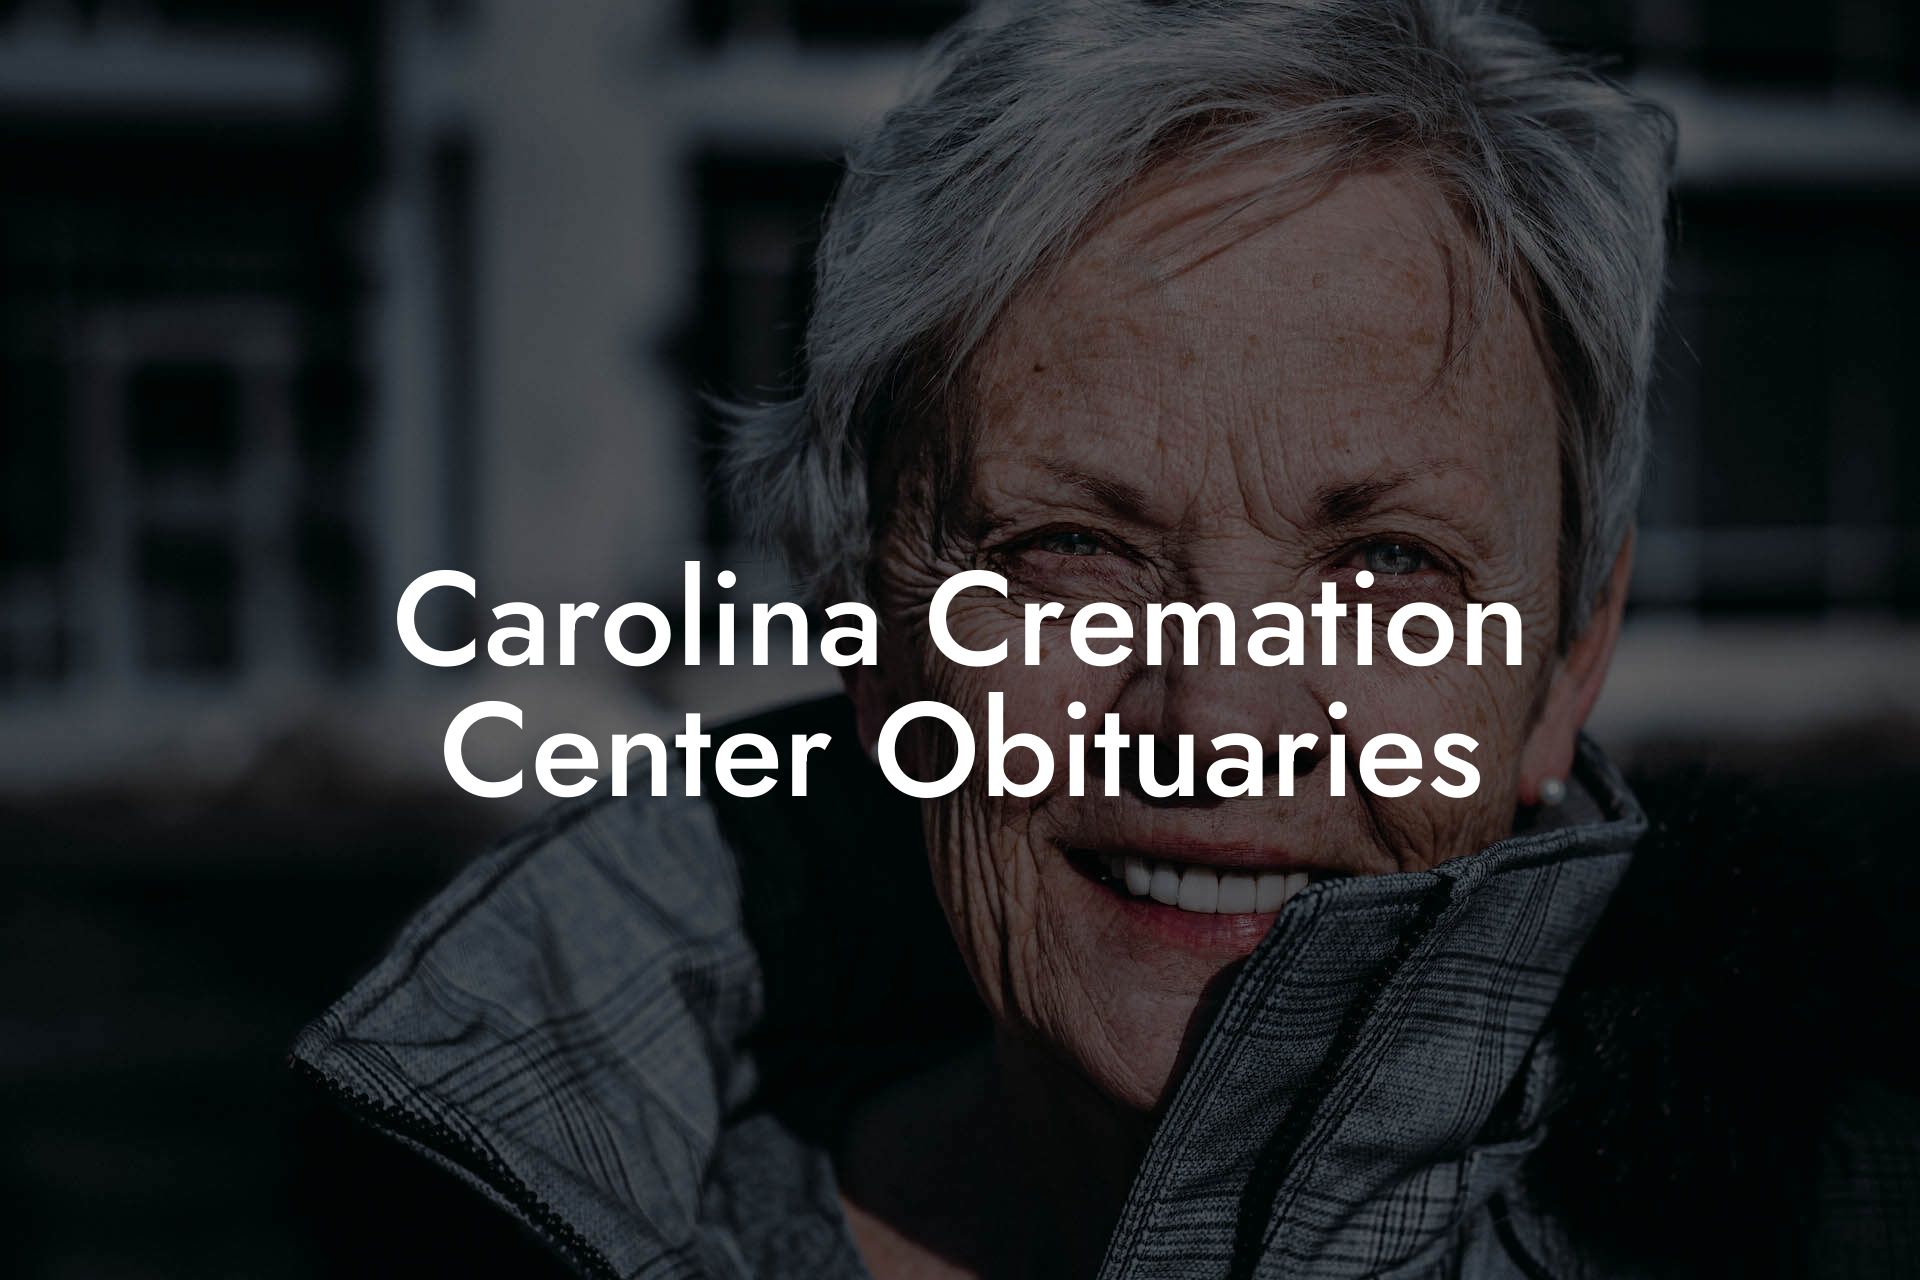 Carolina Cremation Center Obituaries